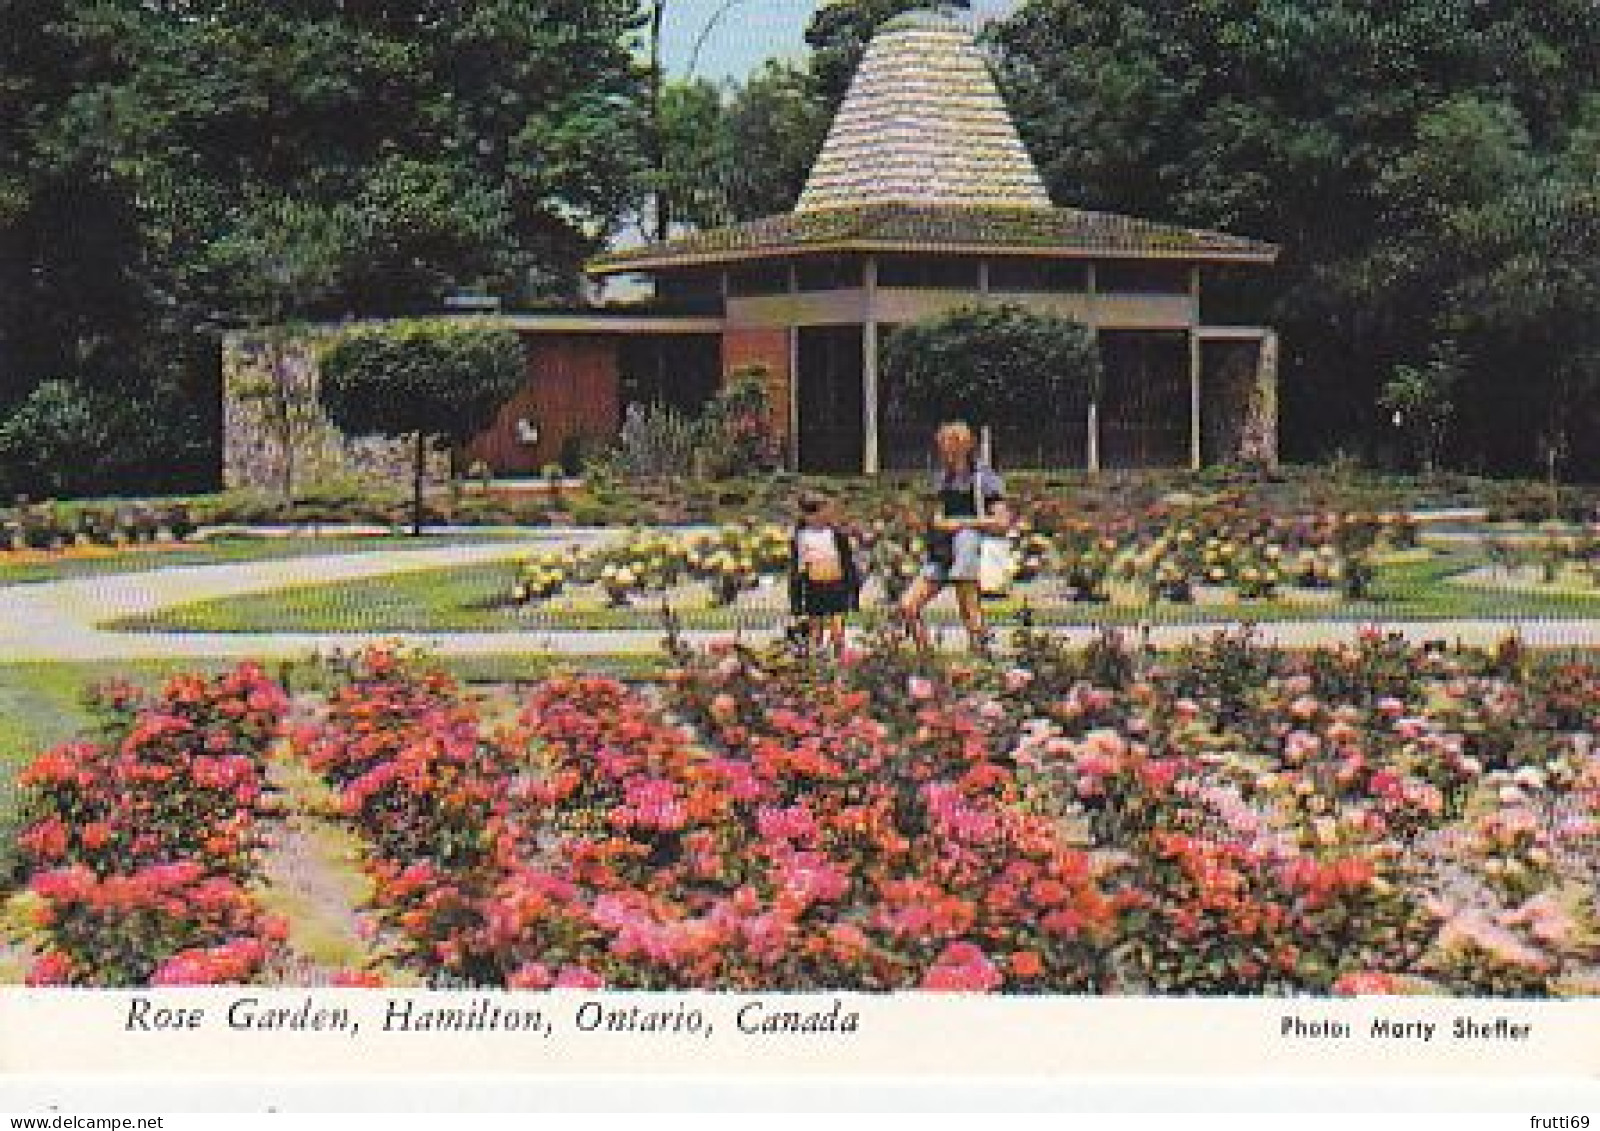 AK148973 CANADA - Ontario - Hamilton - Rose Garden - Hamilton